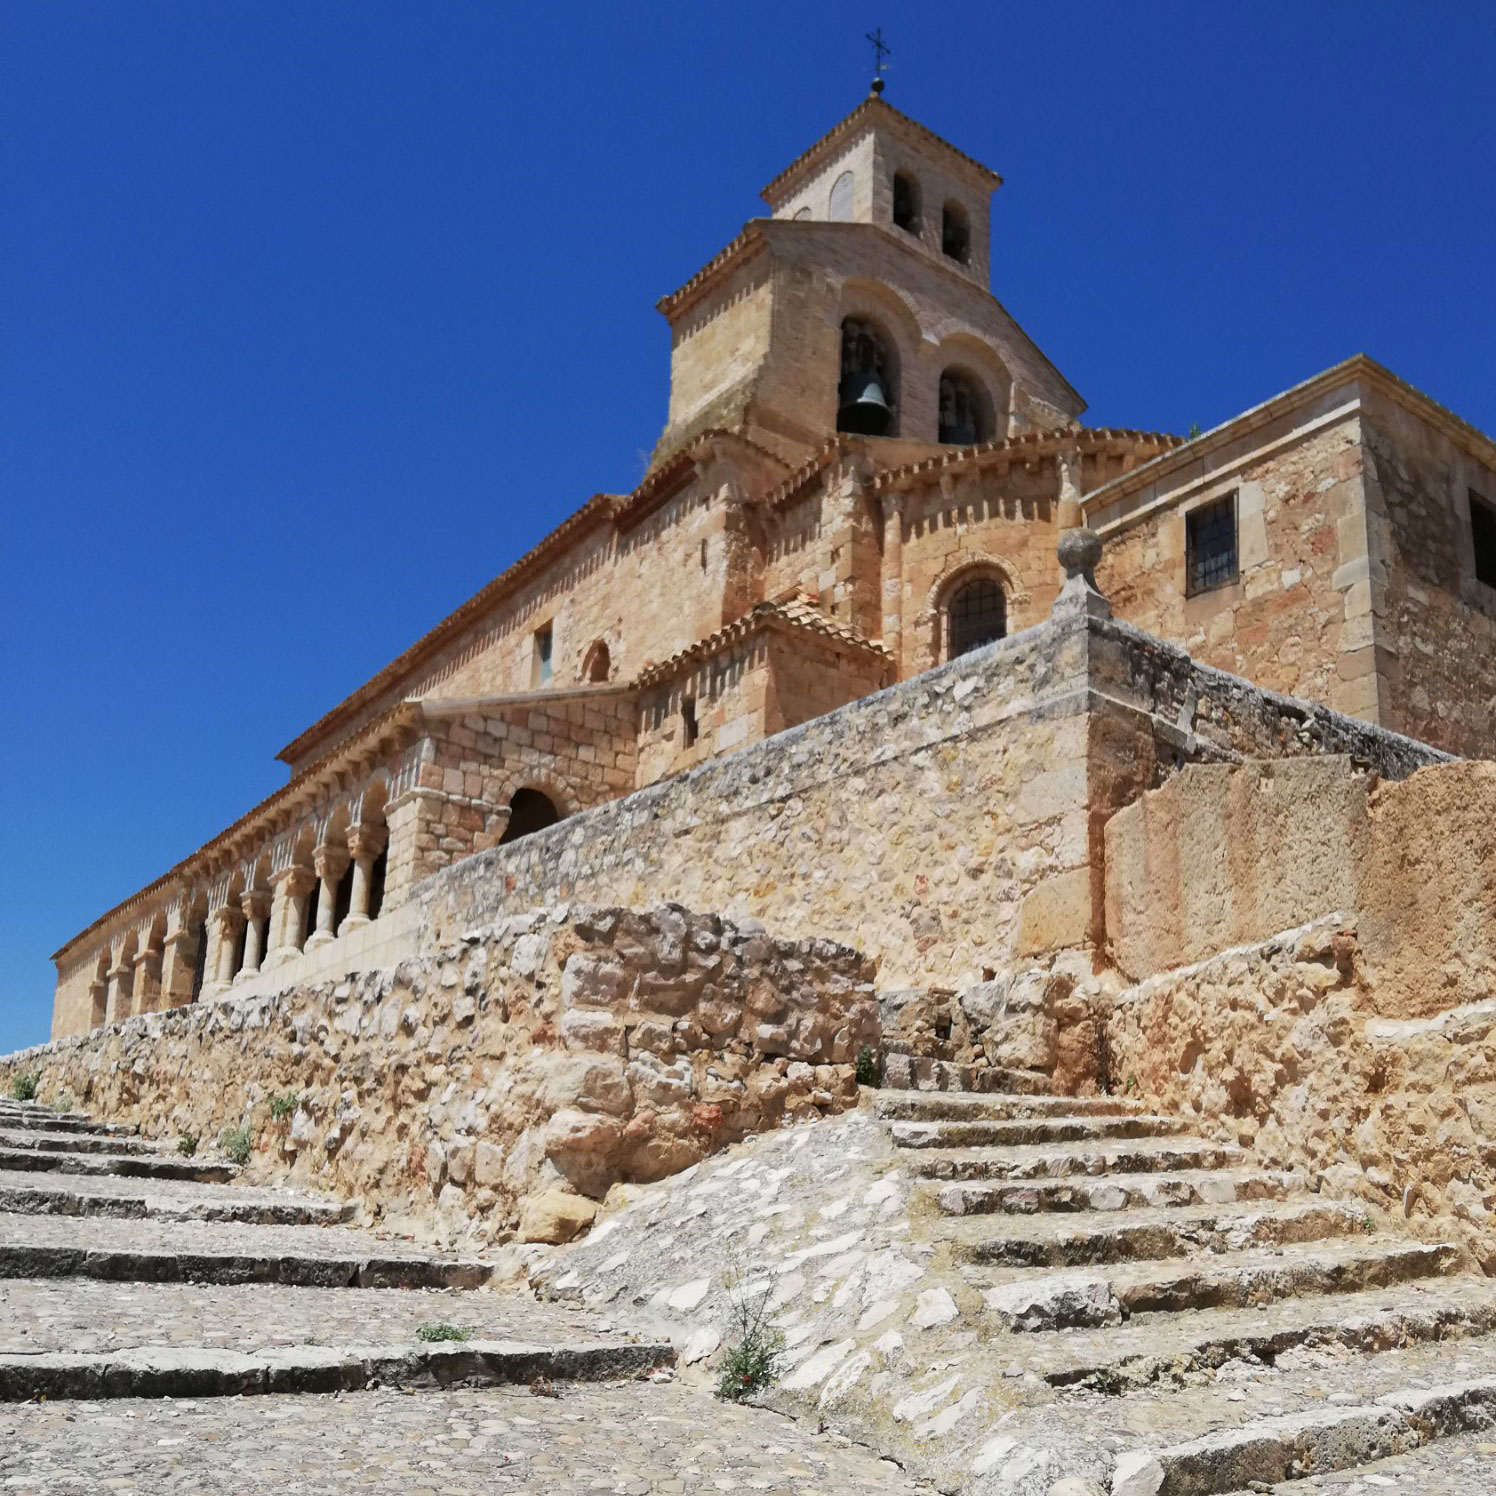 Mucho turismo por ver… Descubriendo la localidad de San Esteban de Gormaz (Soria)